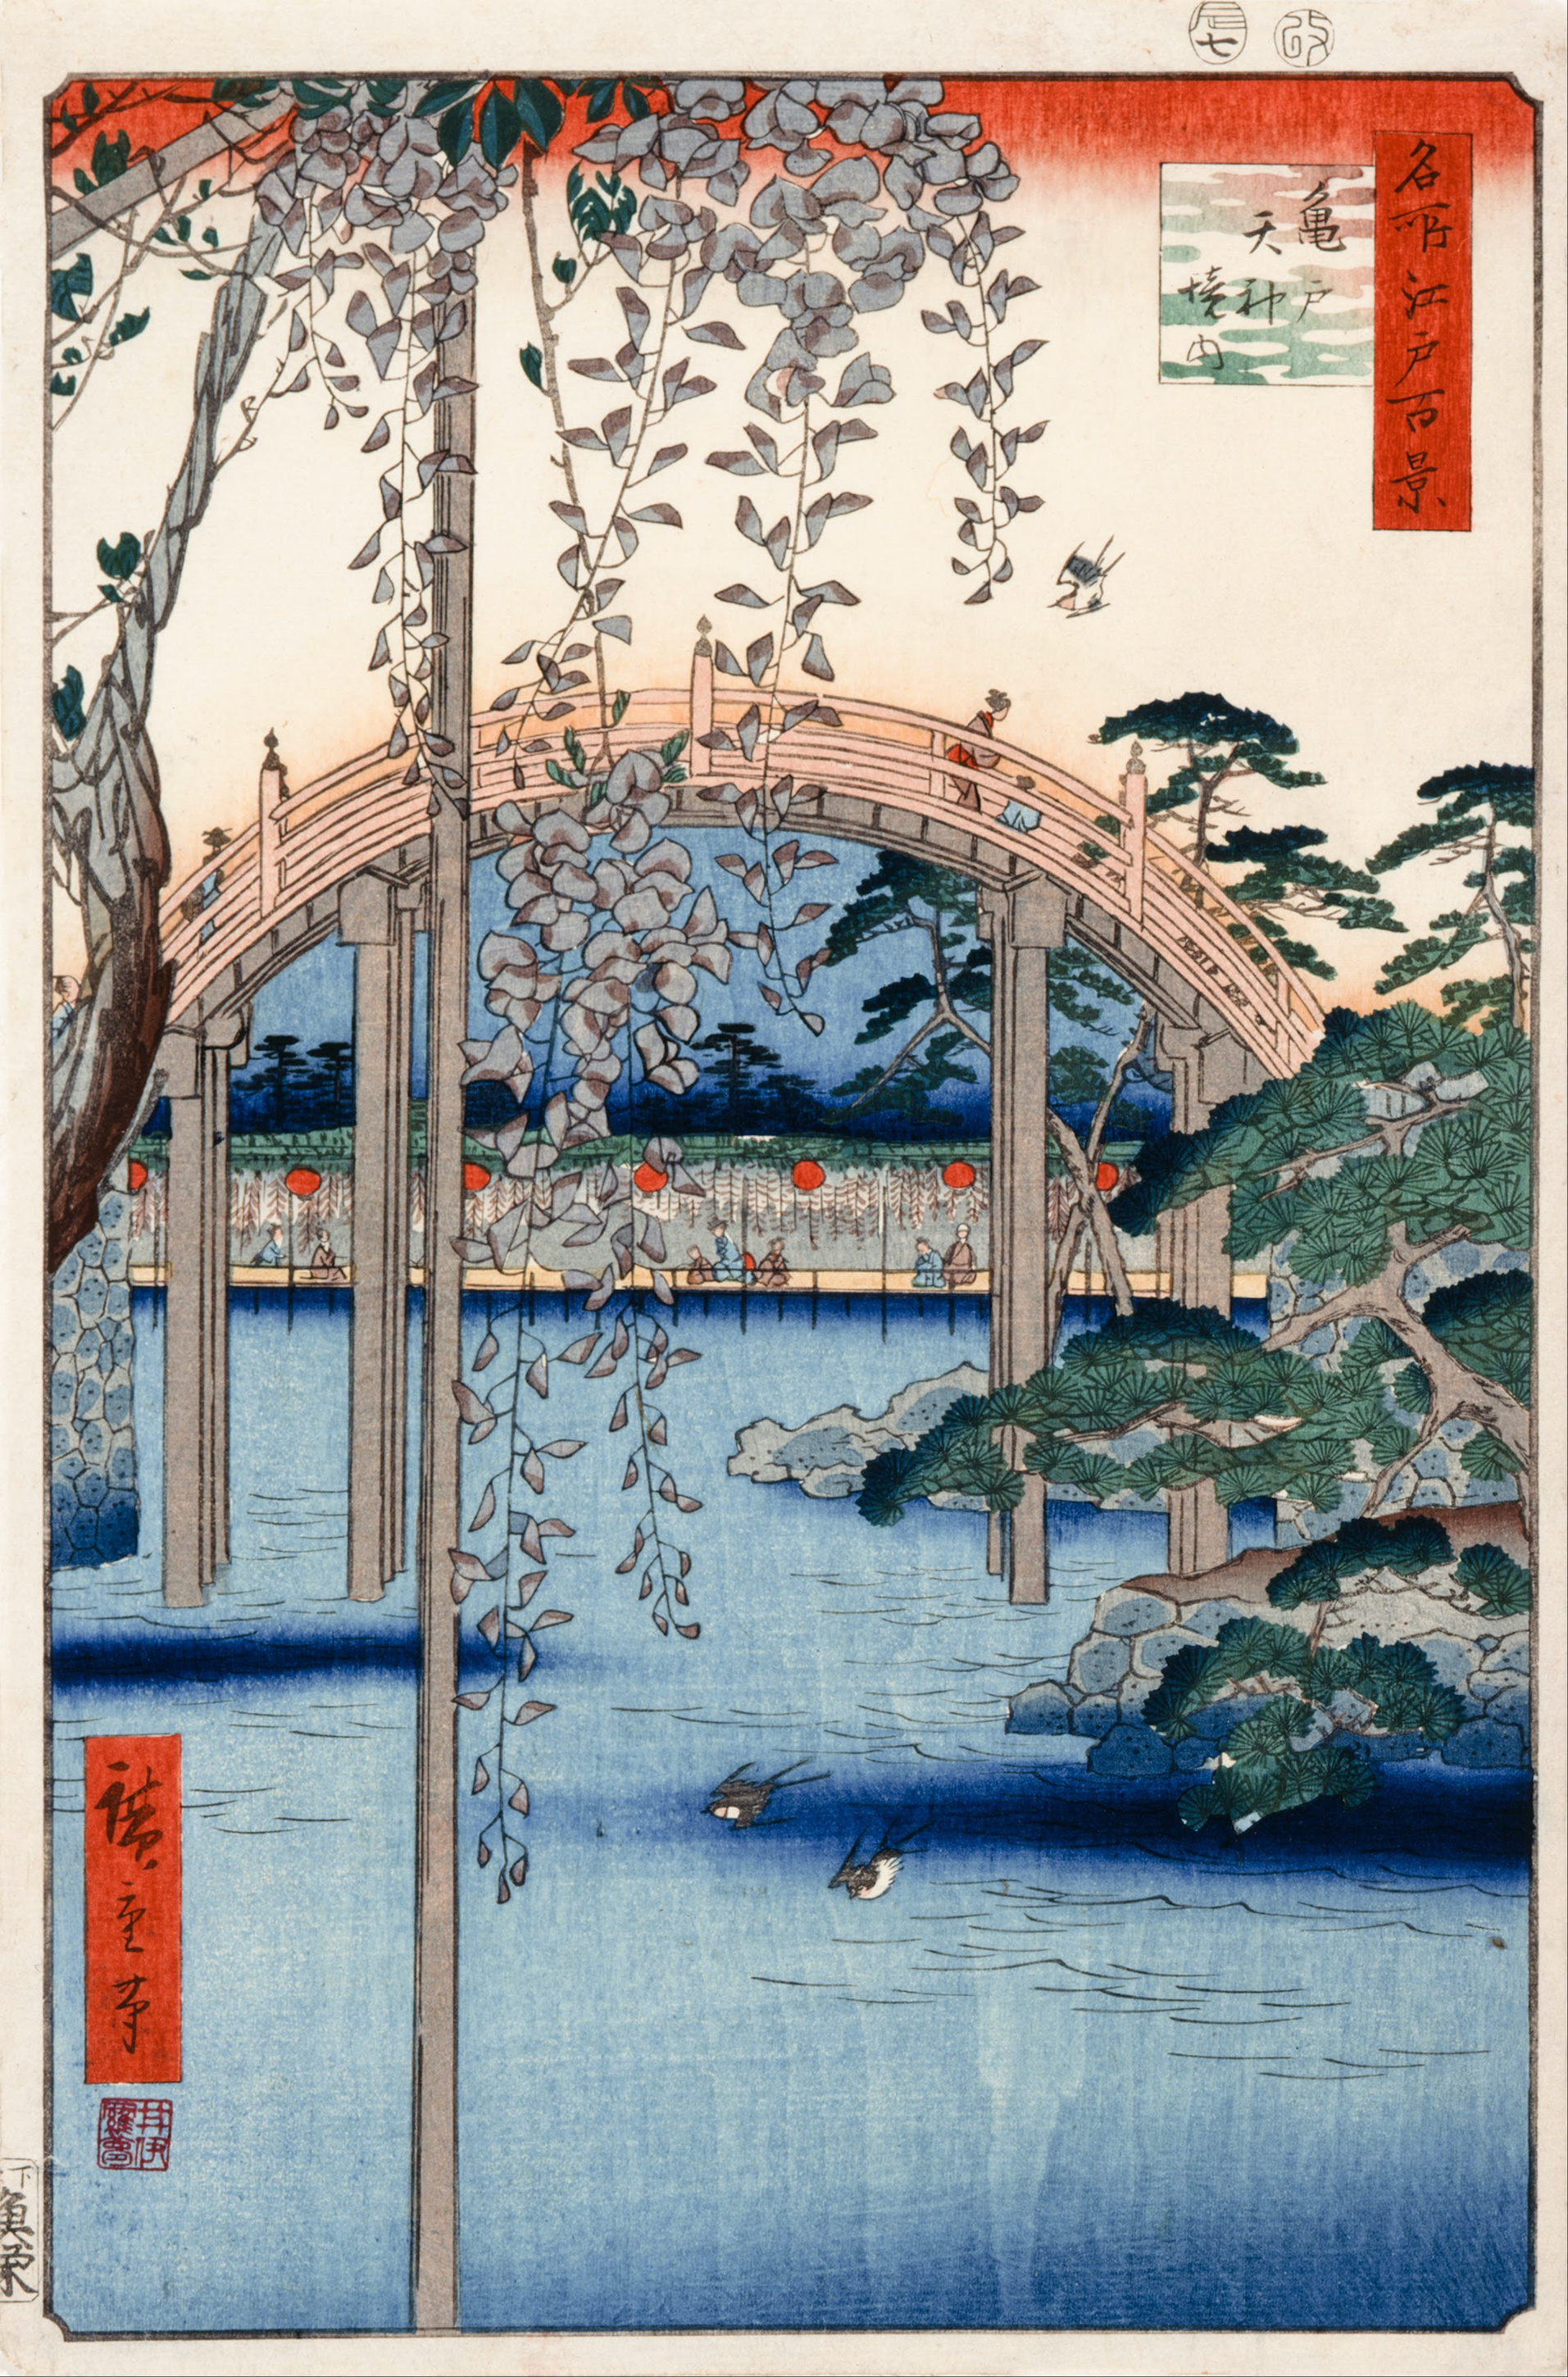 شماره 57، زمین معبد تنجین کامیدو by  Hiroshige - 1856 - 34 x 22.9 cm 